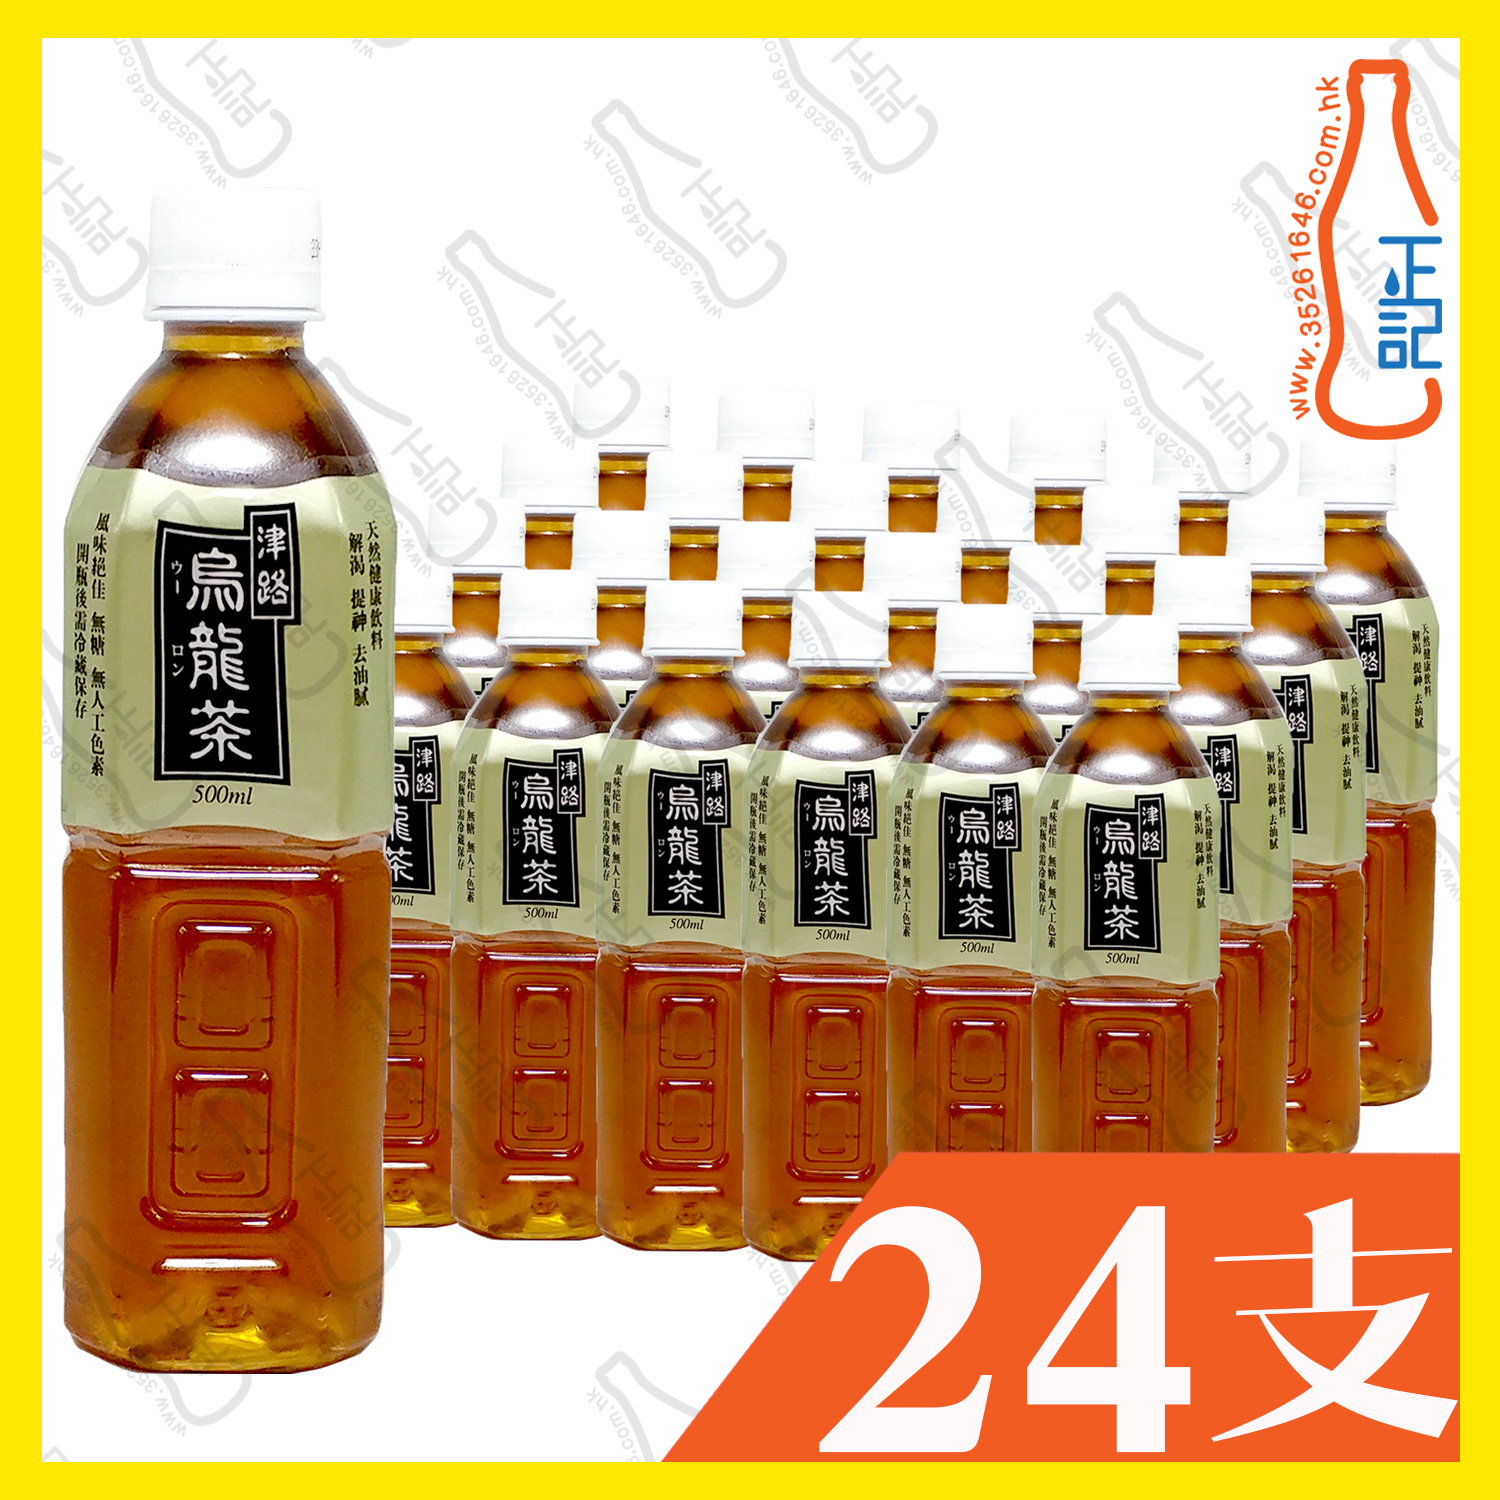 売れ筋ランキング aemarcheMOISTA ラベルレス 凍頂烏龍茶500ml ×24本 ainushamsi.com